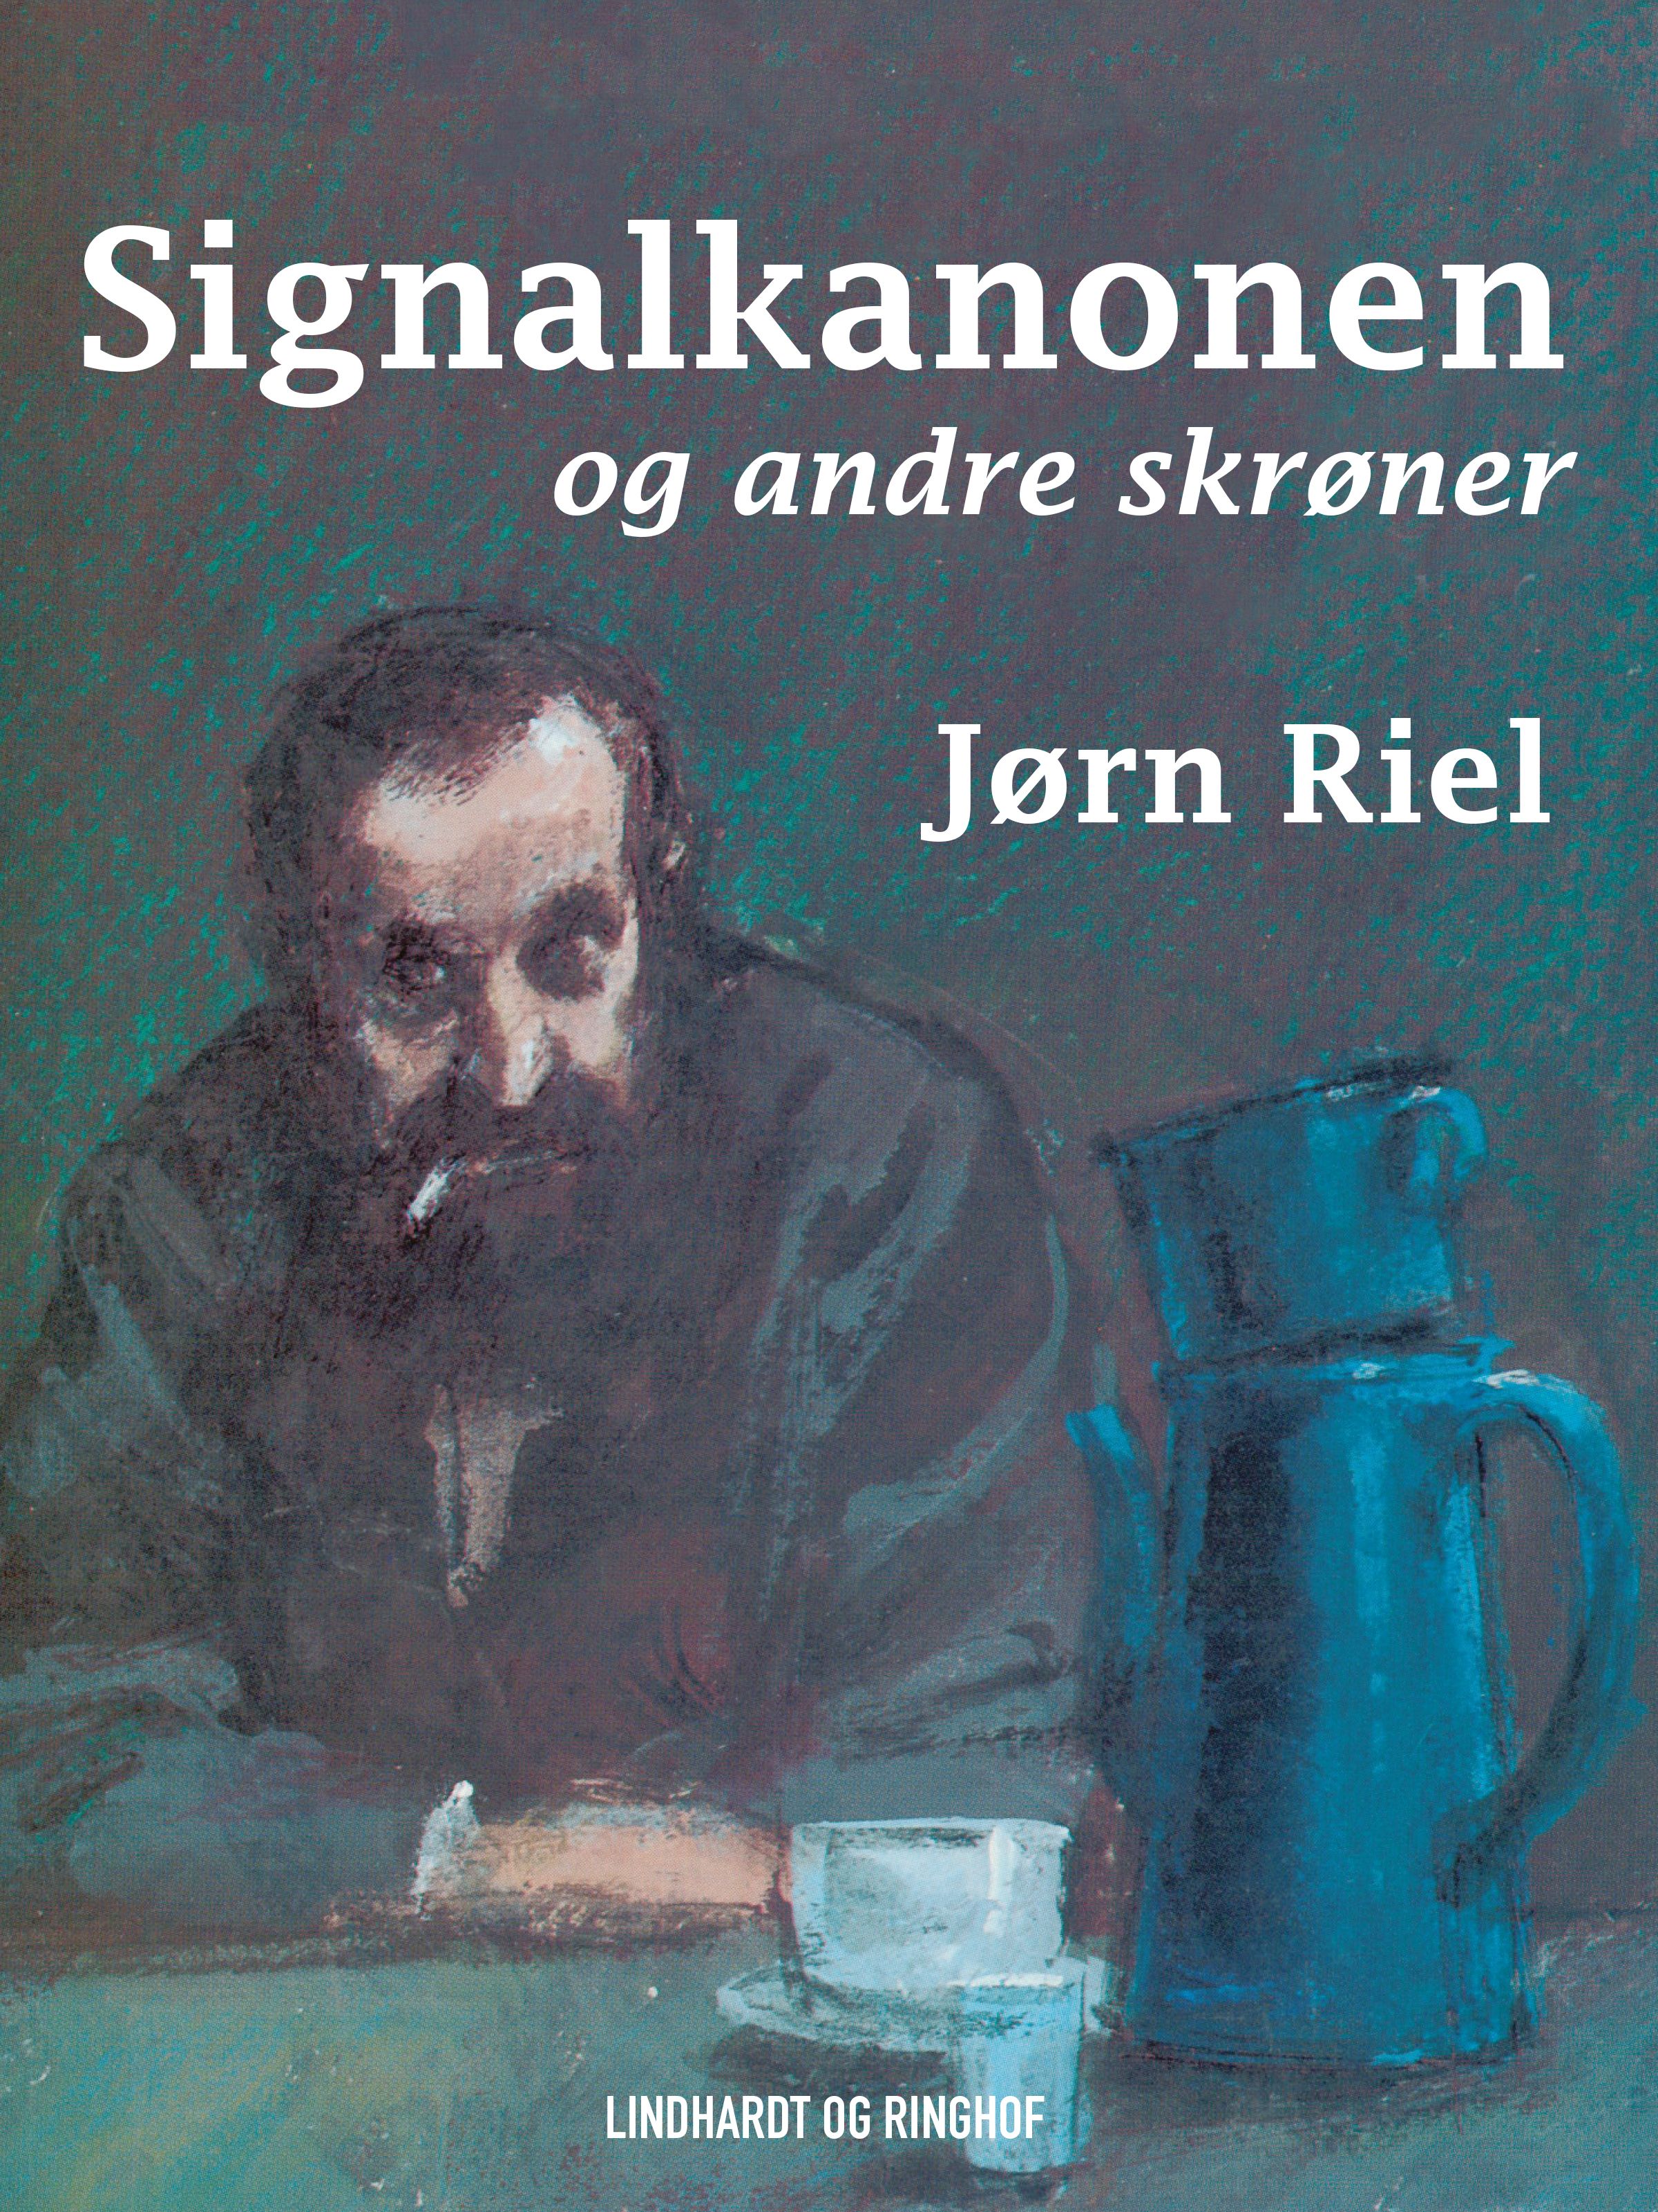 Signalkanonen og andre skrøner, e-bok av Jørn Riel